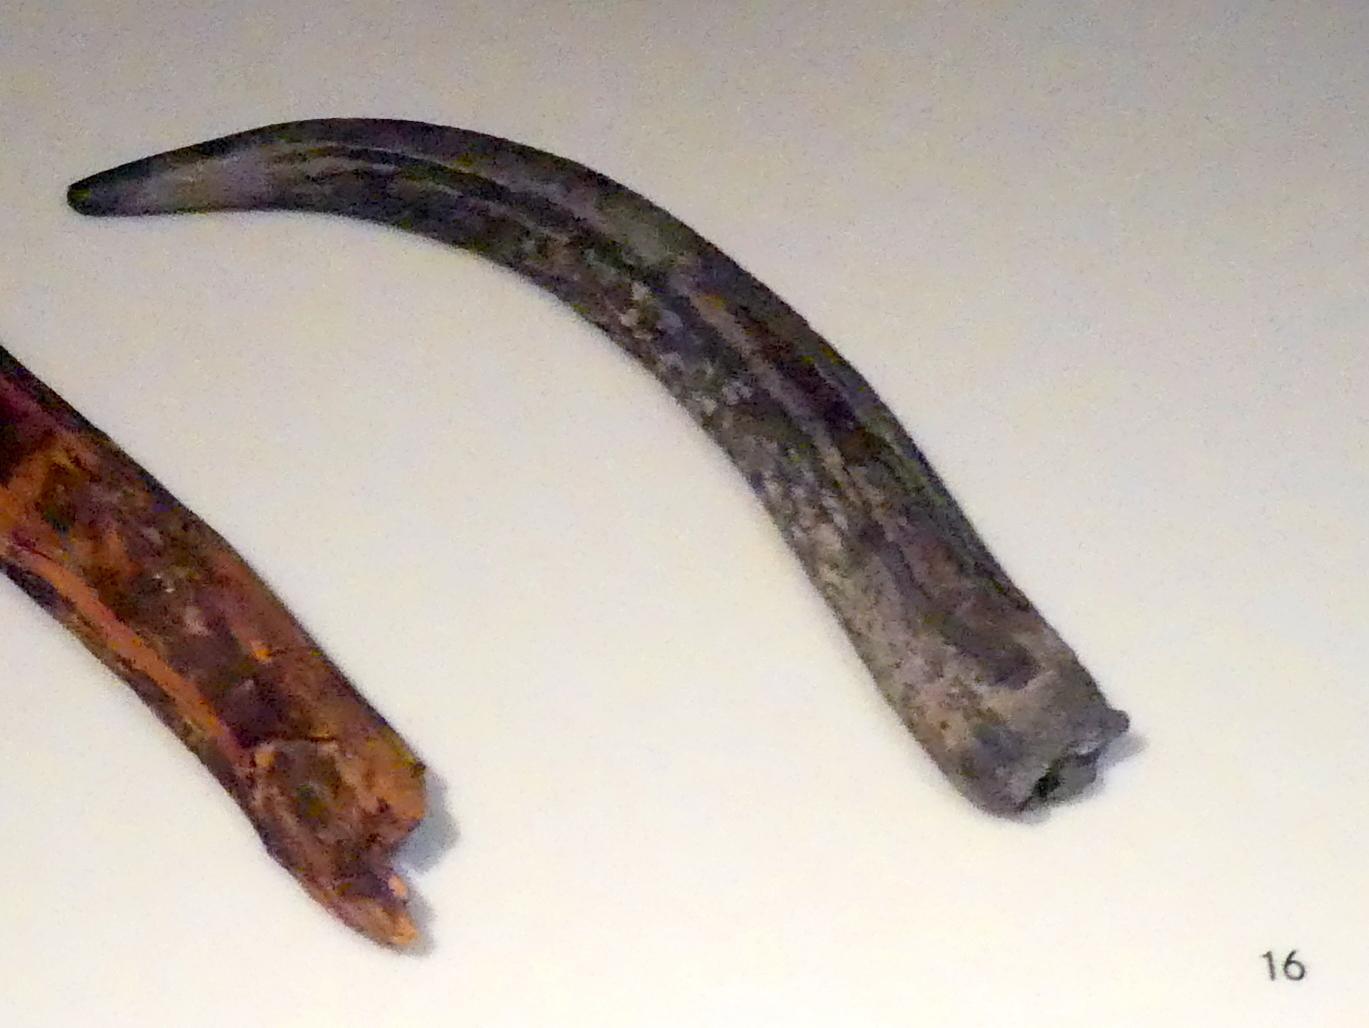 Gerät, Jungneolithikum, 4400 - 3500 v. Chr., Spätneolithikum, Undatiert, 4400 - 2800 v. Chr.